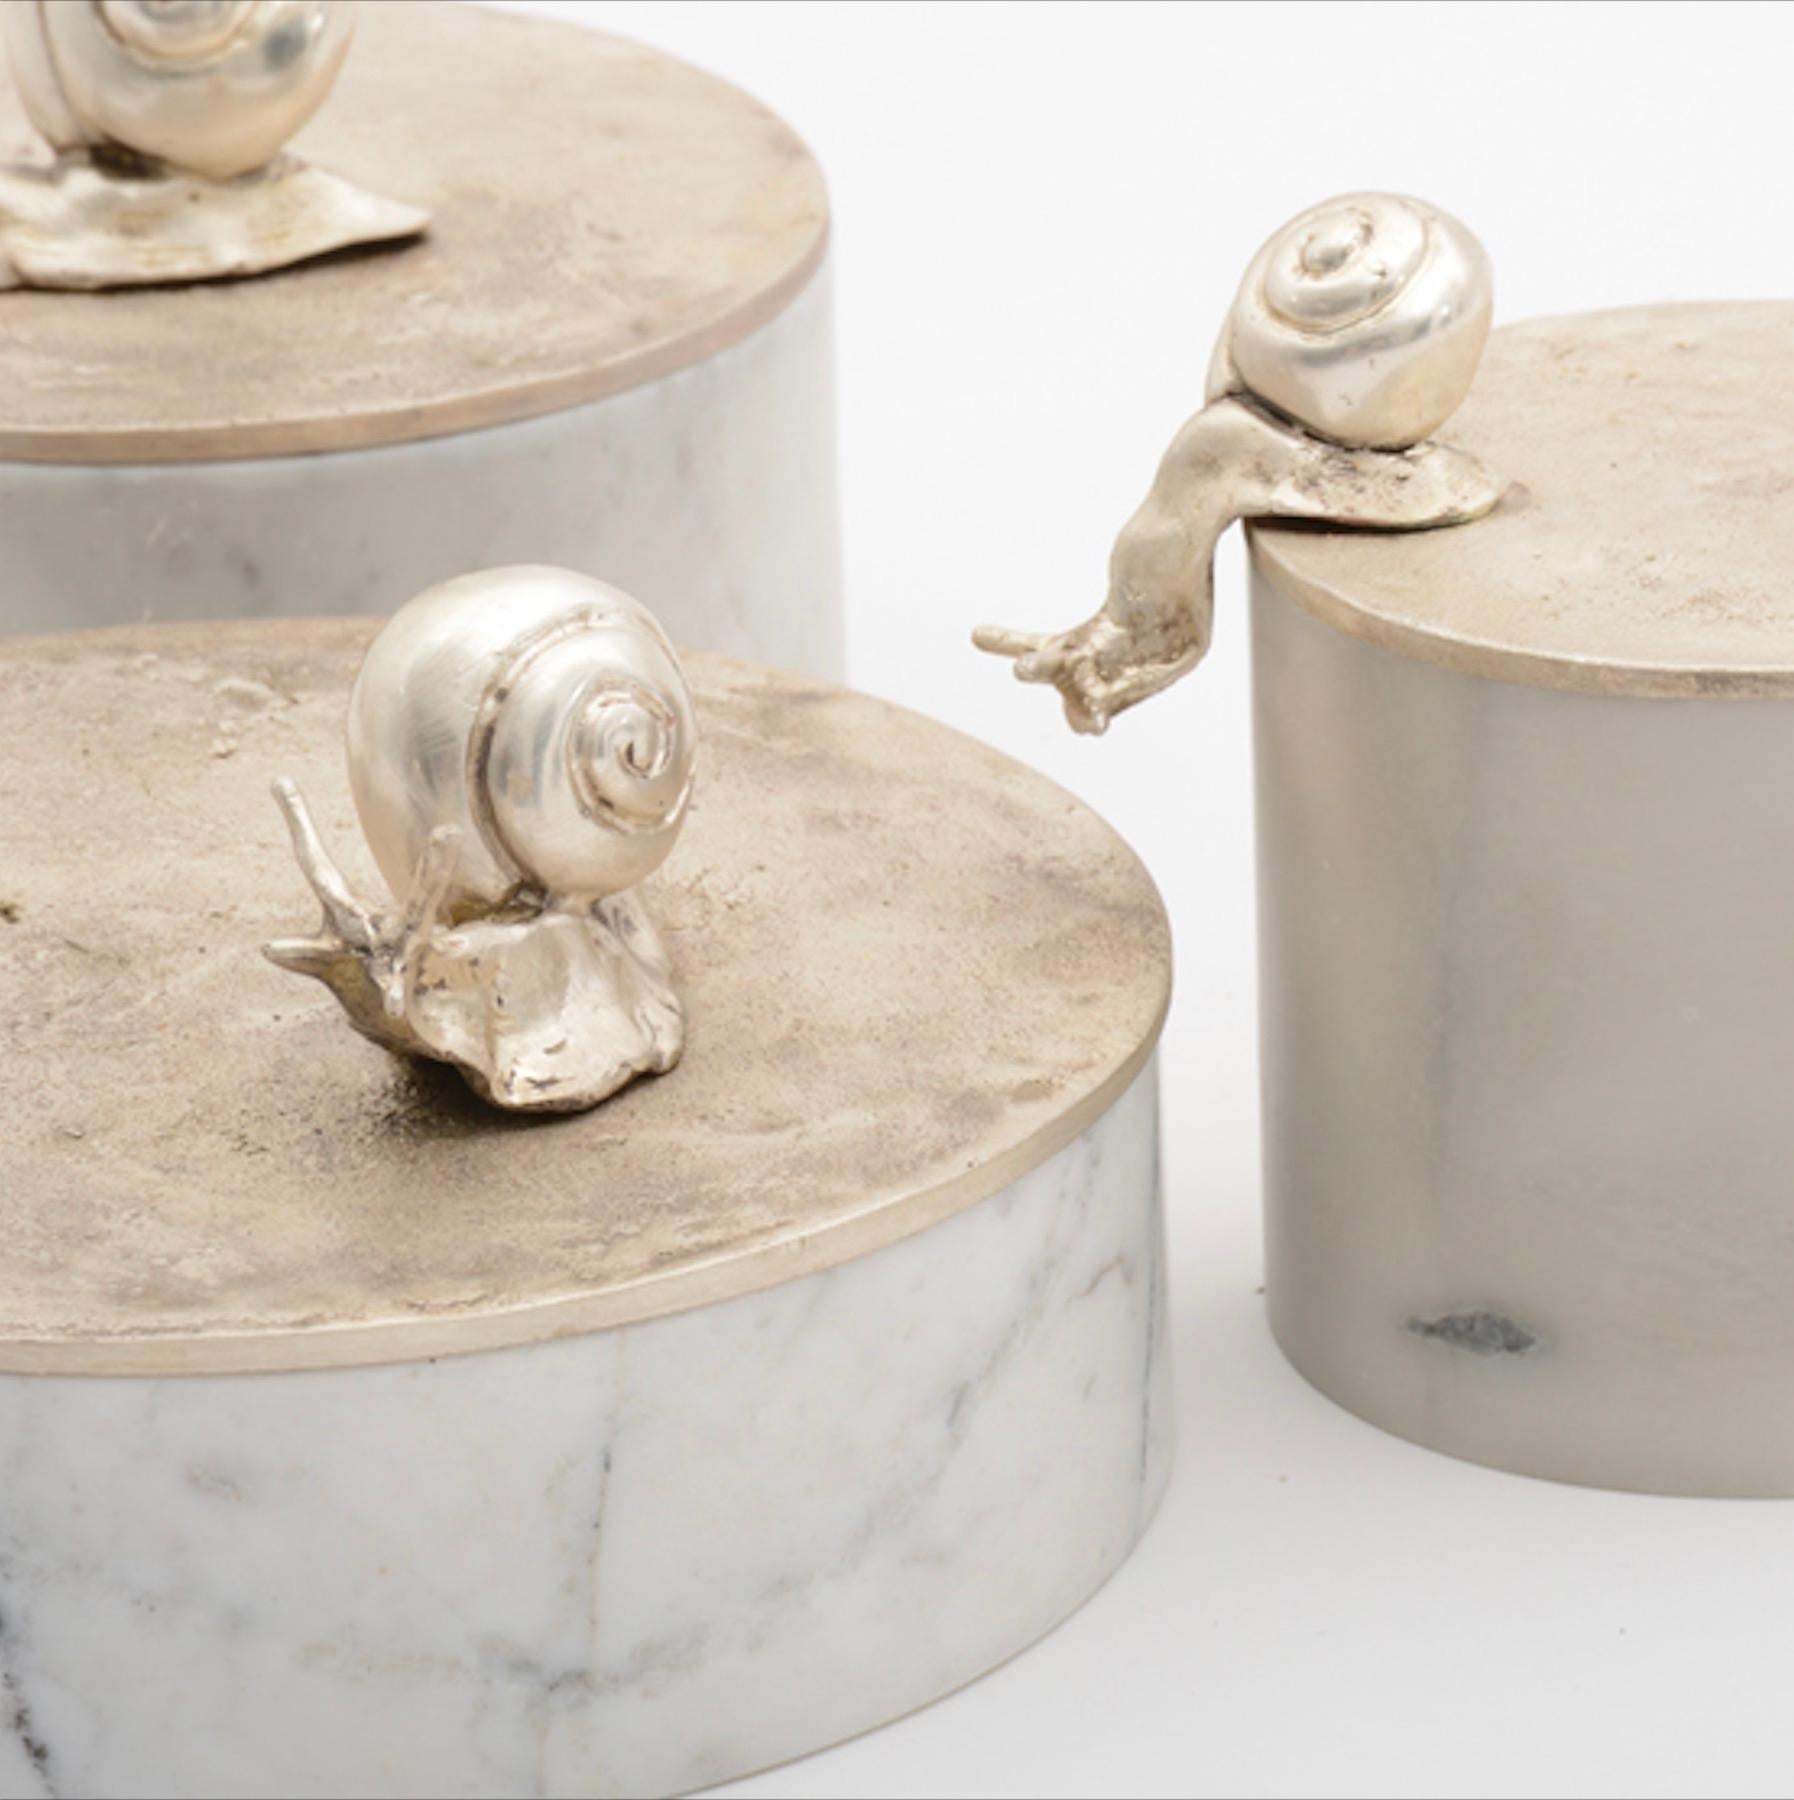 Disponible dès maintenant au Showroom Elan Atelier NY et prêt à être expédié !

La boîte à souvenirs sculpturale de Caracole avec une base sculptée à la main en marbre blanc et un couvercle en bronze argenté mat avec deux escargots. Un élégant